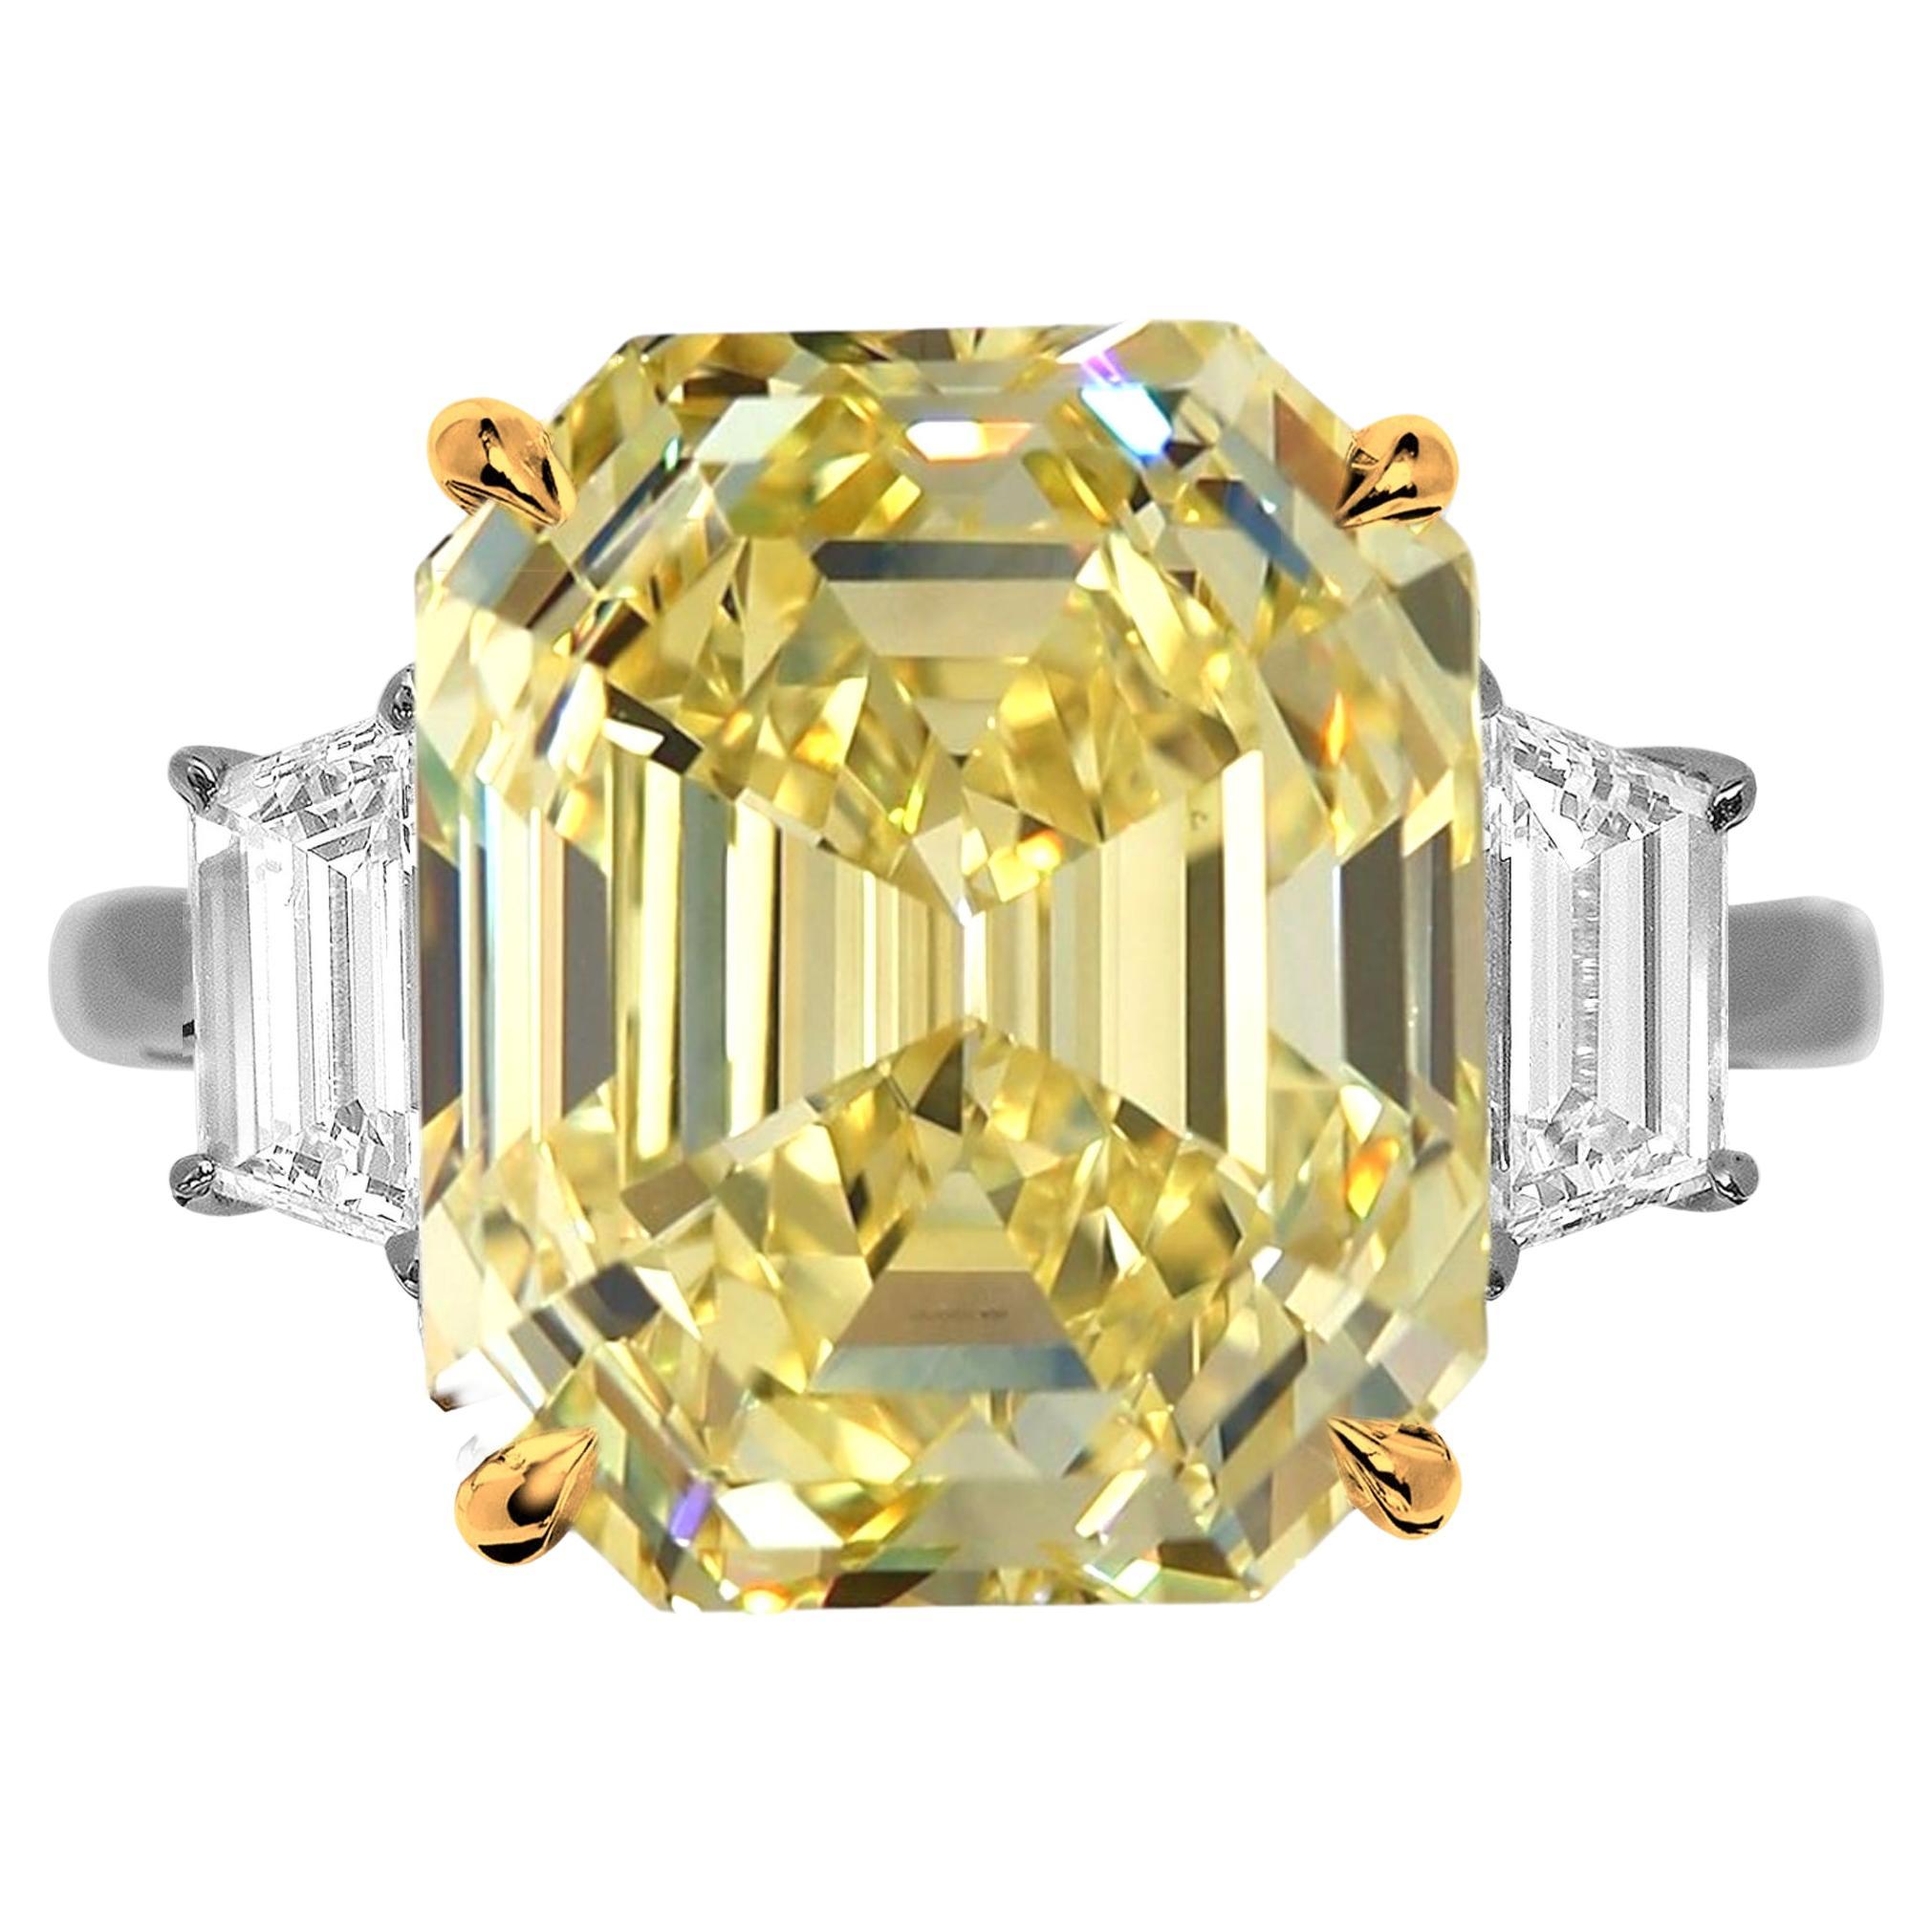 Canadian GIA Certified Fancy Intense Yellow 7 Carat Emerald Cut Diamond Ring